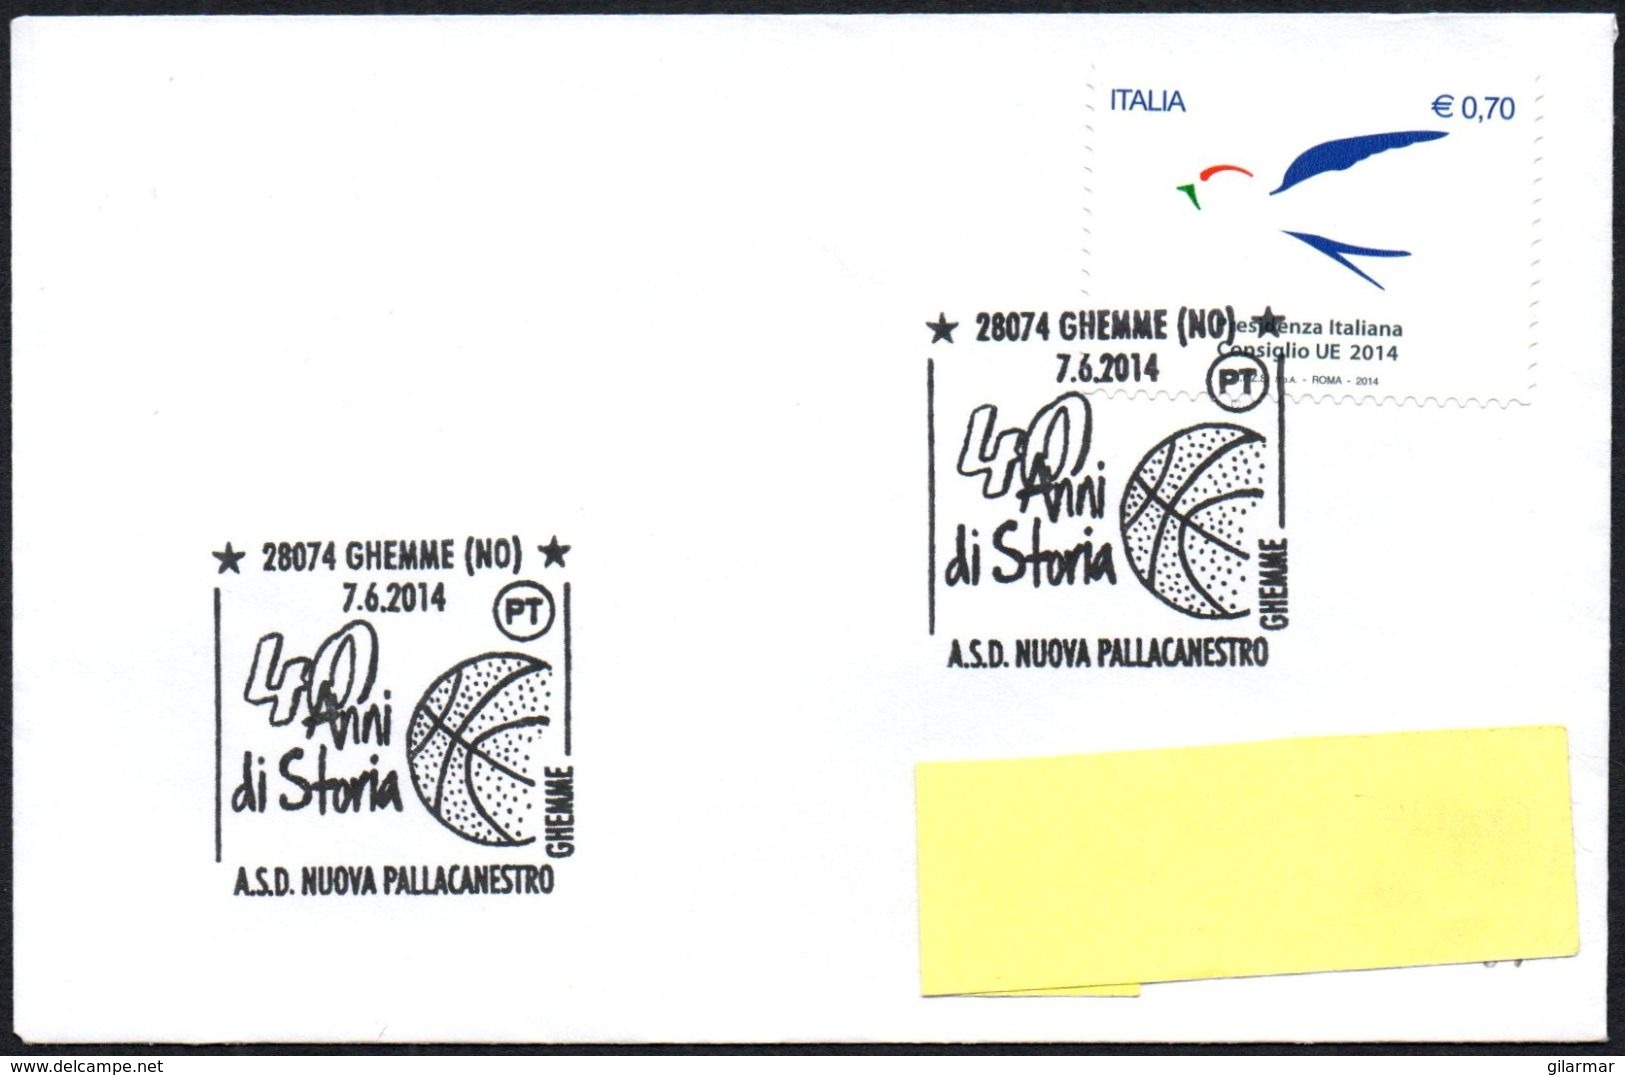 BASKETBALL - ITALIA GHEMME (NO) 2014 - 40 ANNI DI STORIA ASD NUOVA PALLACANESTRO - SMALL SIZE COVER - Basketball